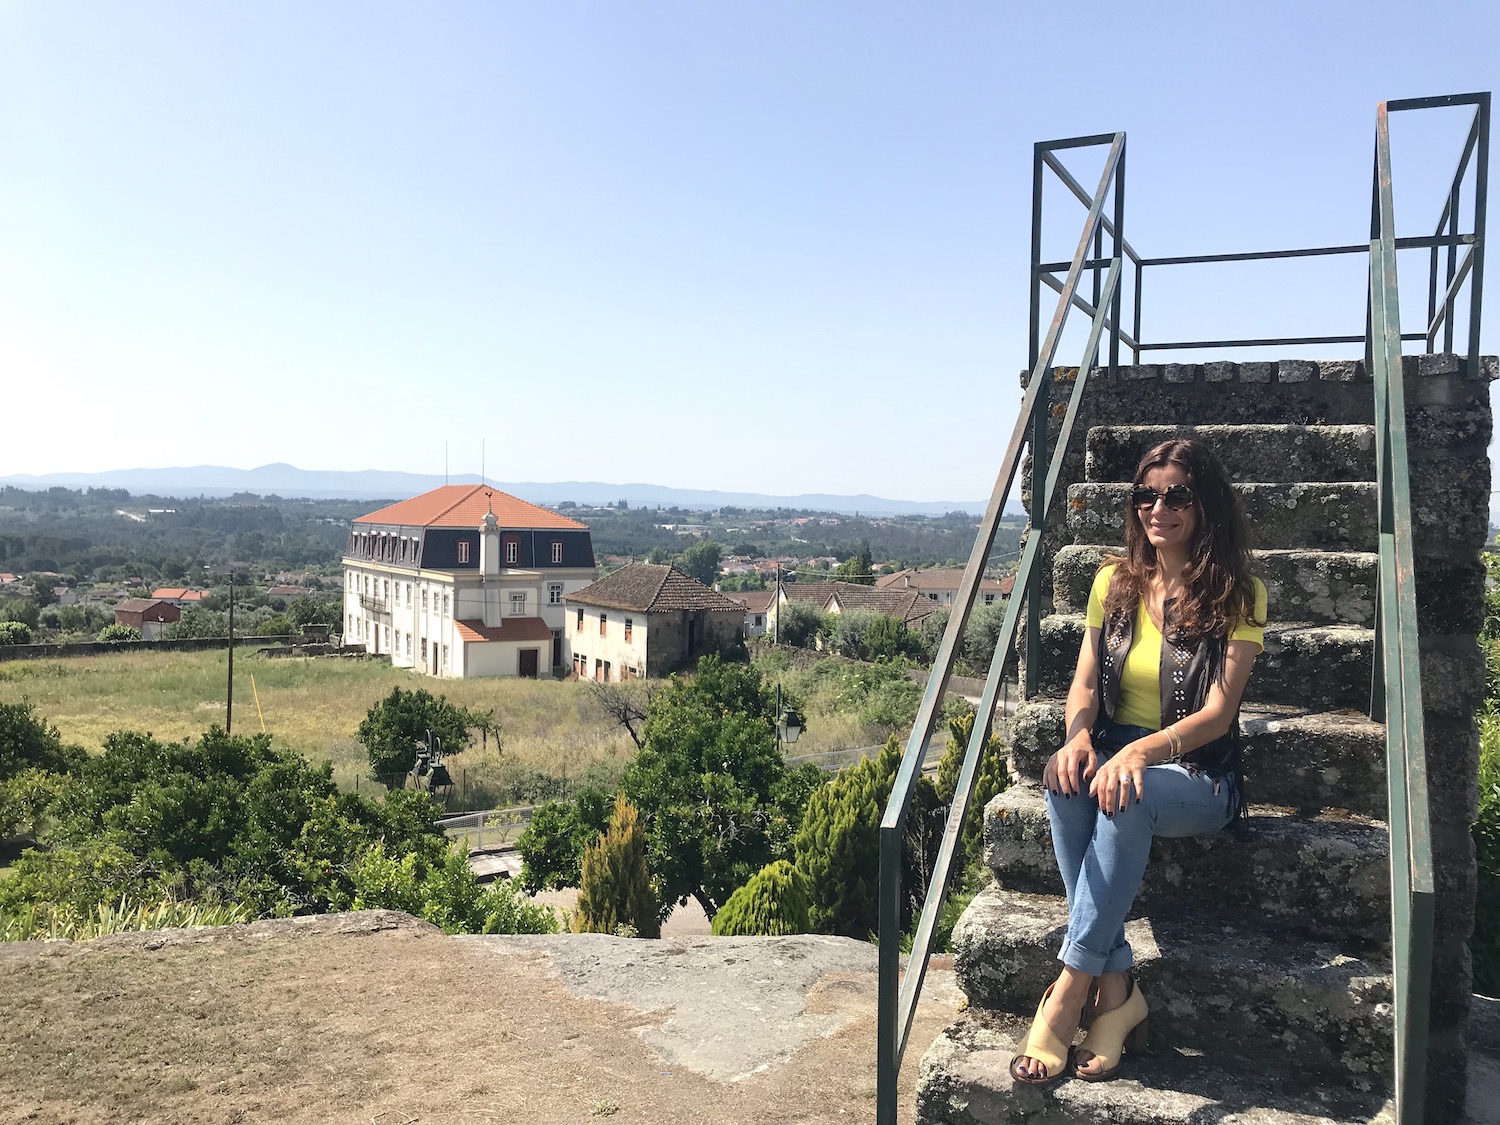 Carregal do Sal – a bonita vila do centro de Portugal!